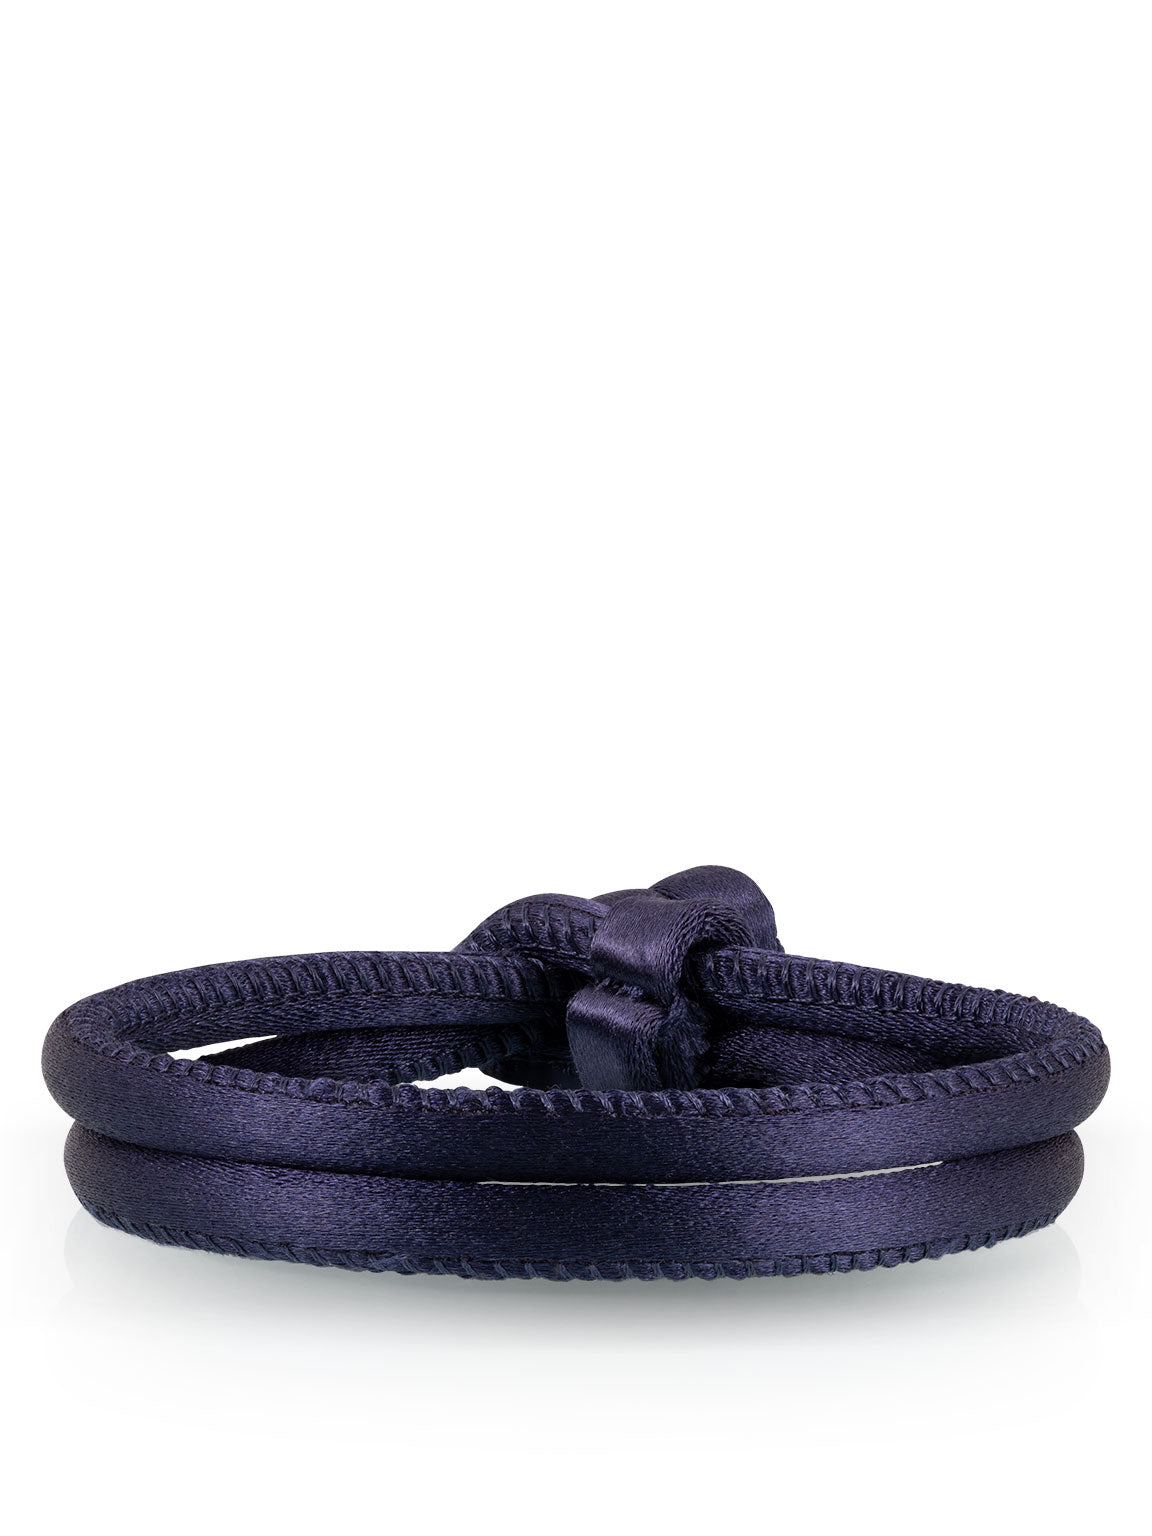 navy blue silk bracelet for women